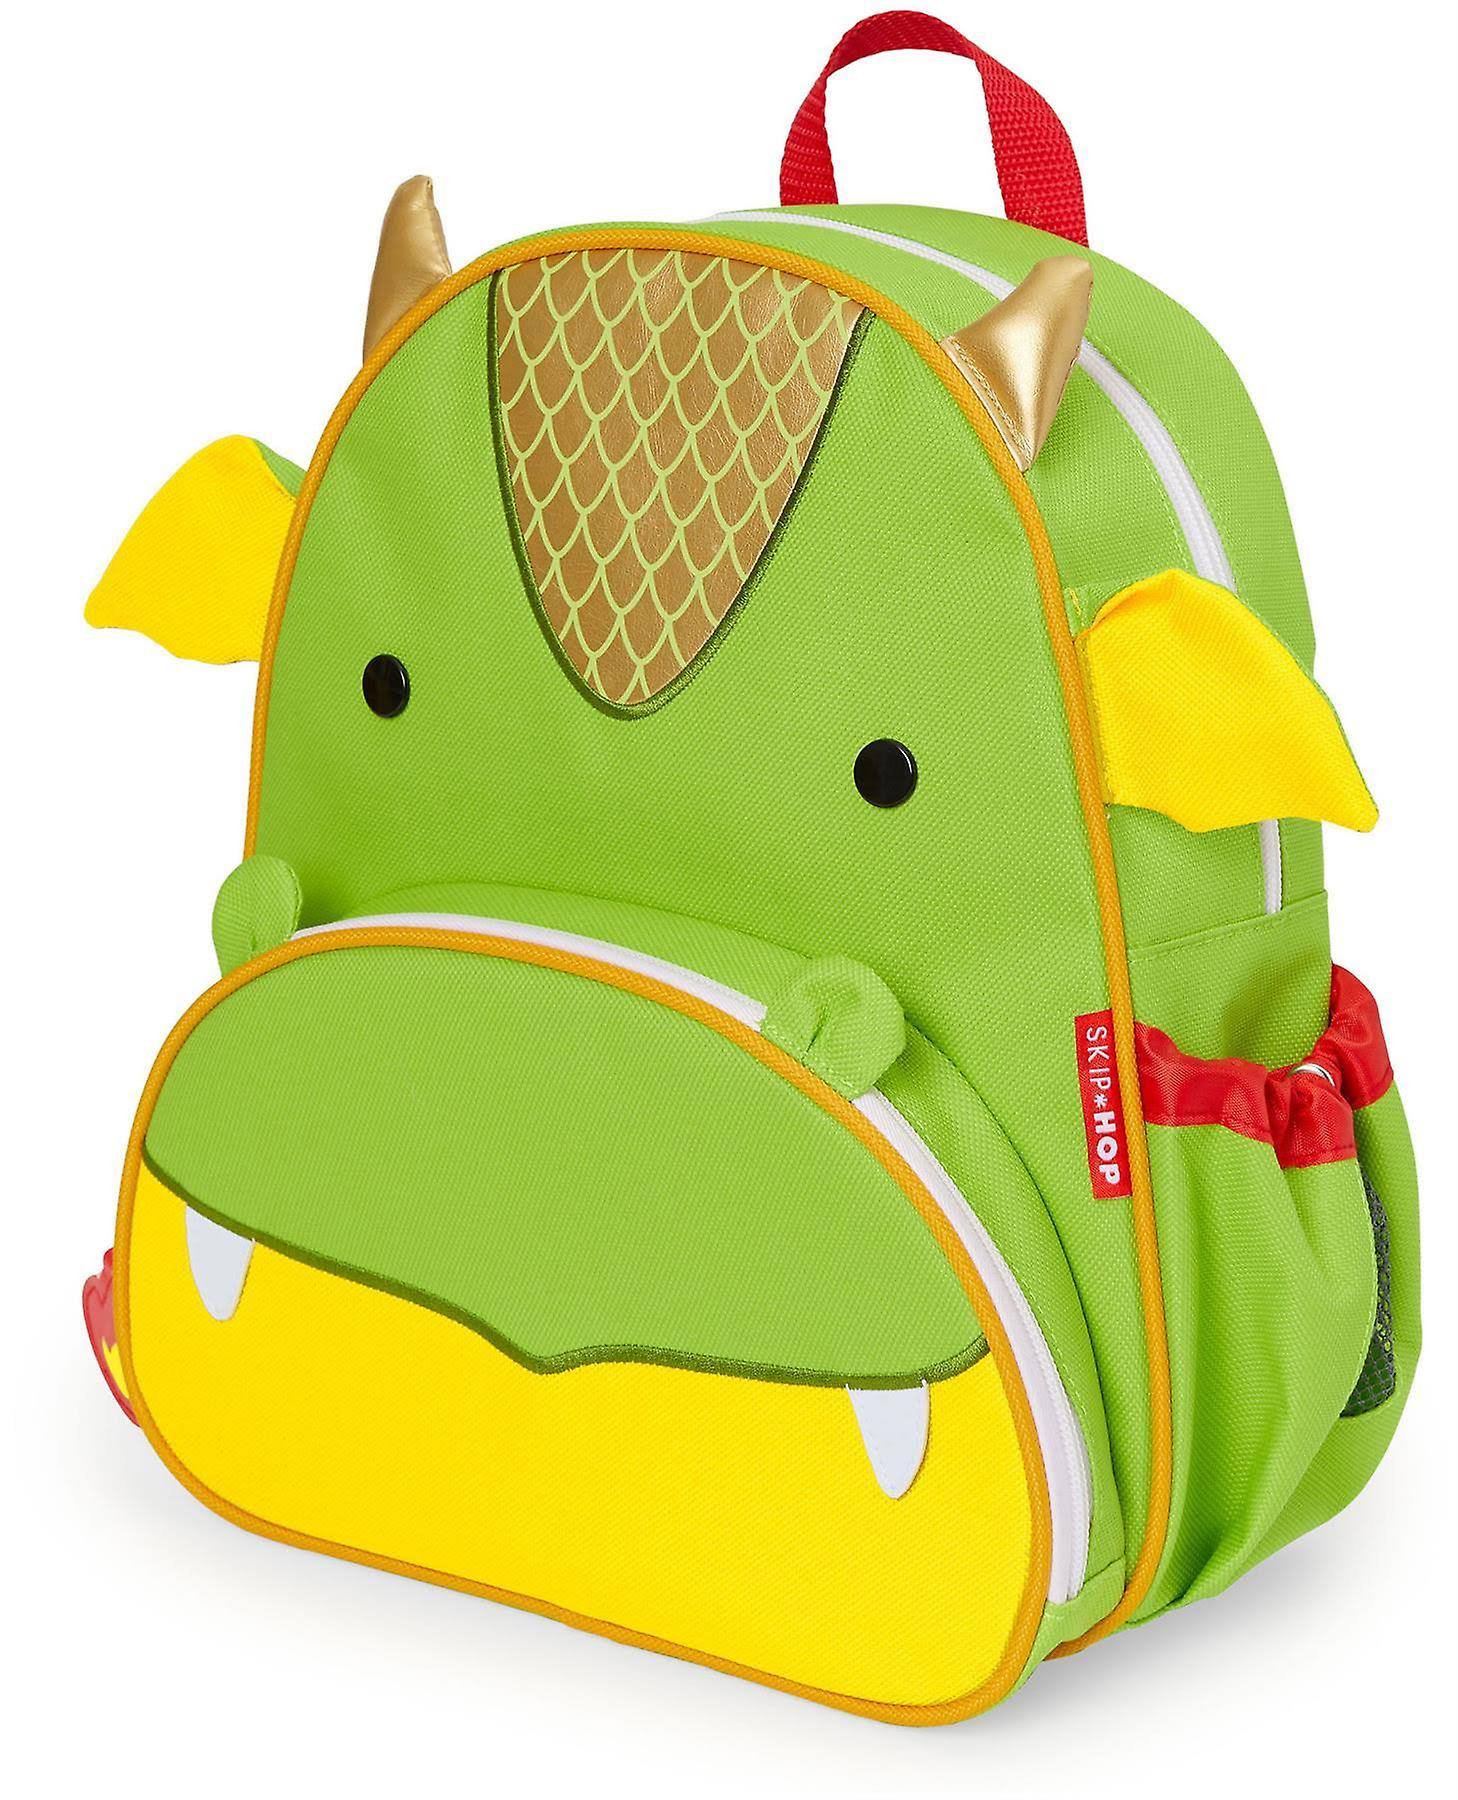 Skip Hop Zoo Backpack - Dragon